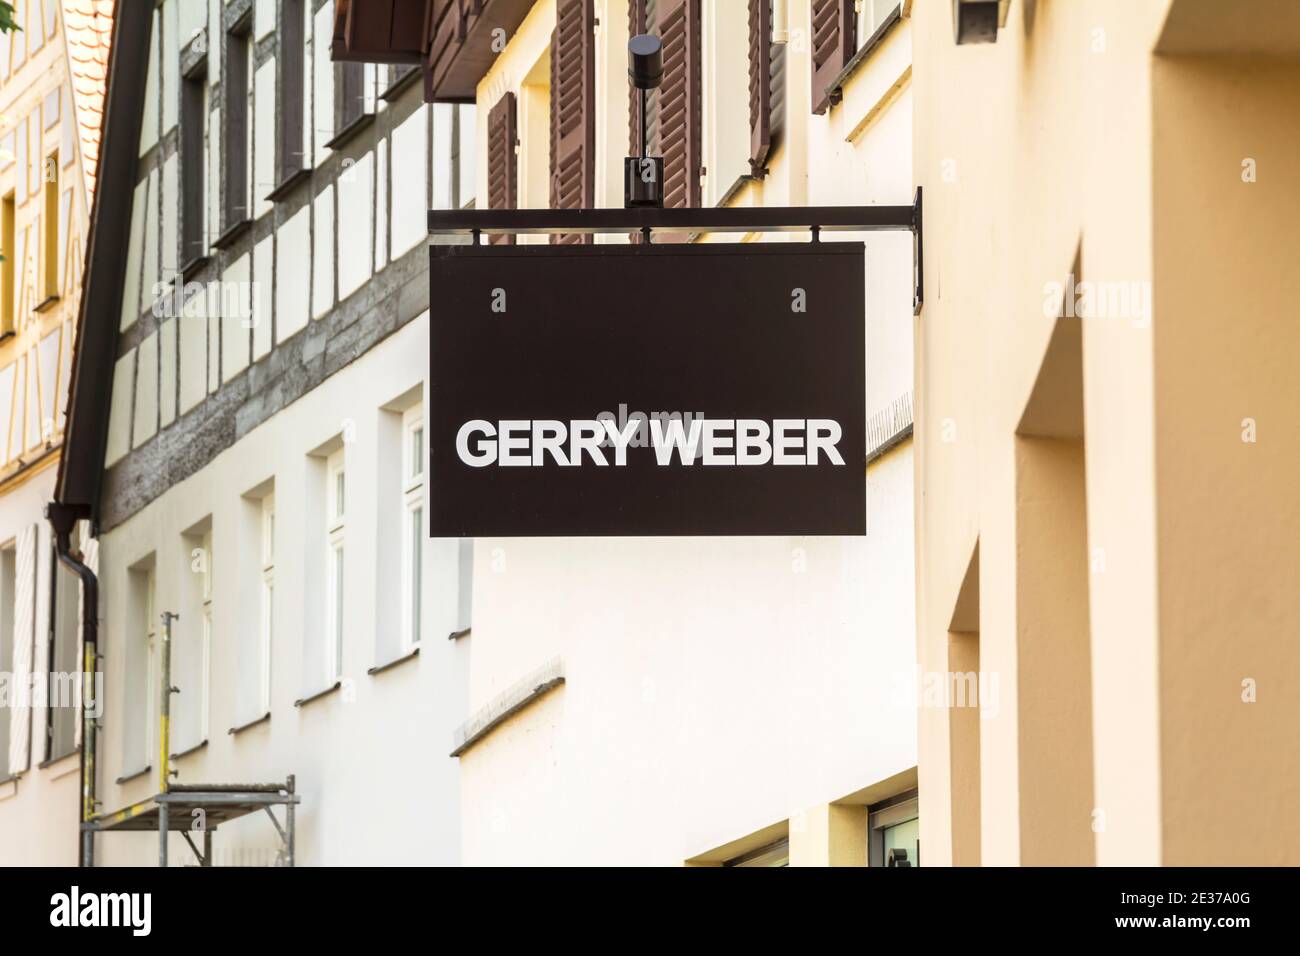 Schwabach, Deutschland : Laden des Bekleidungsunternehmens 'Gerry Weber', Gerry  Weber betreibt über 1,000 eigene Geschäfte mit den Marken Taifun, SAMOON  und HALLHUBER Stockfotografie - Alamy